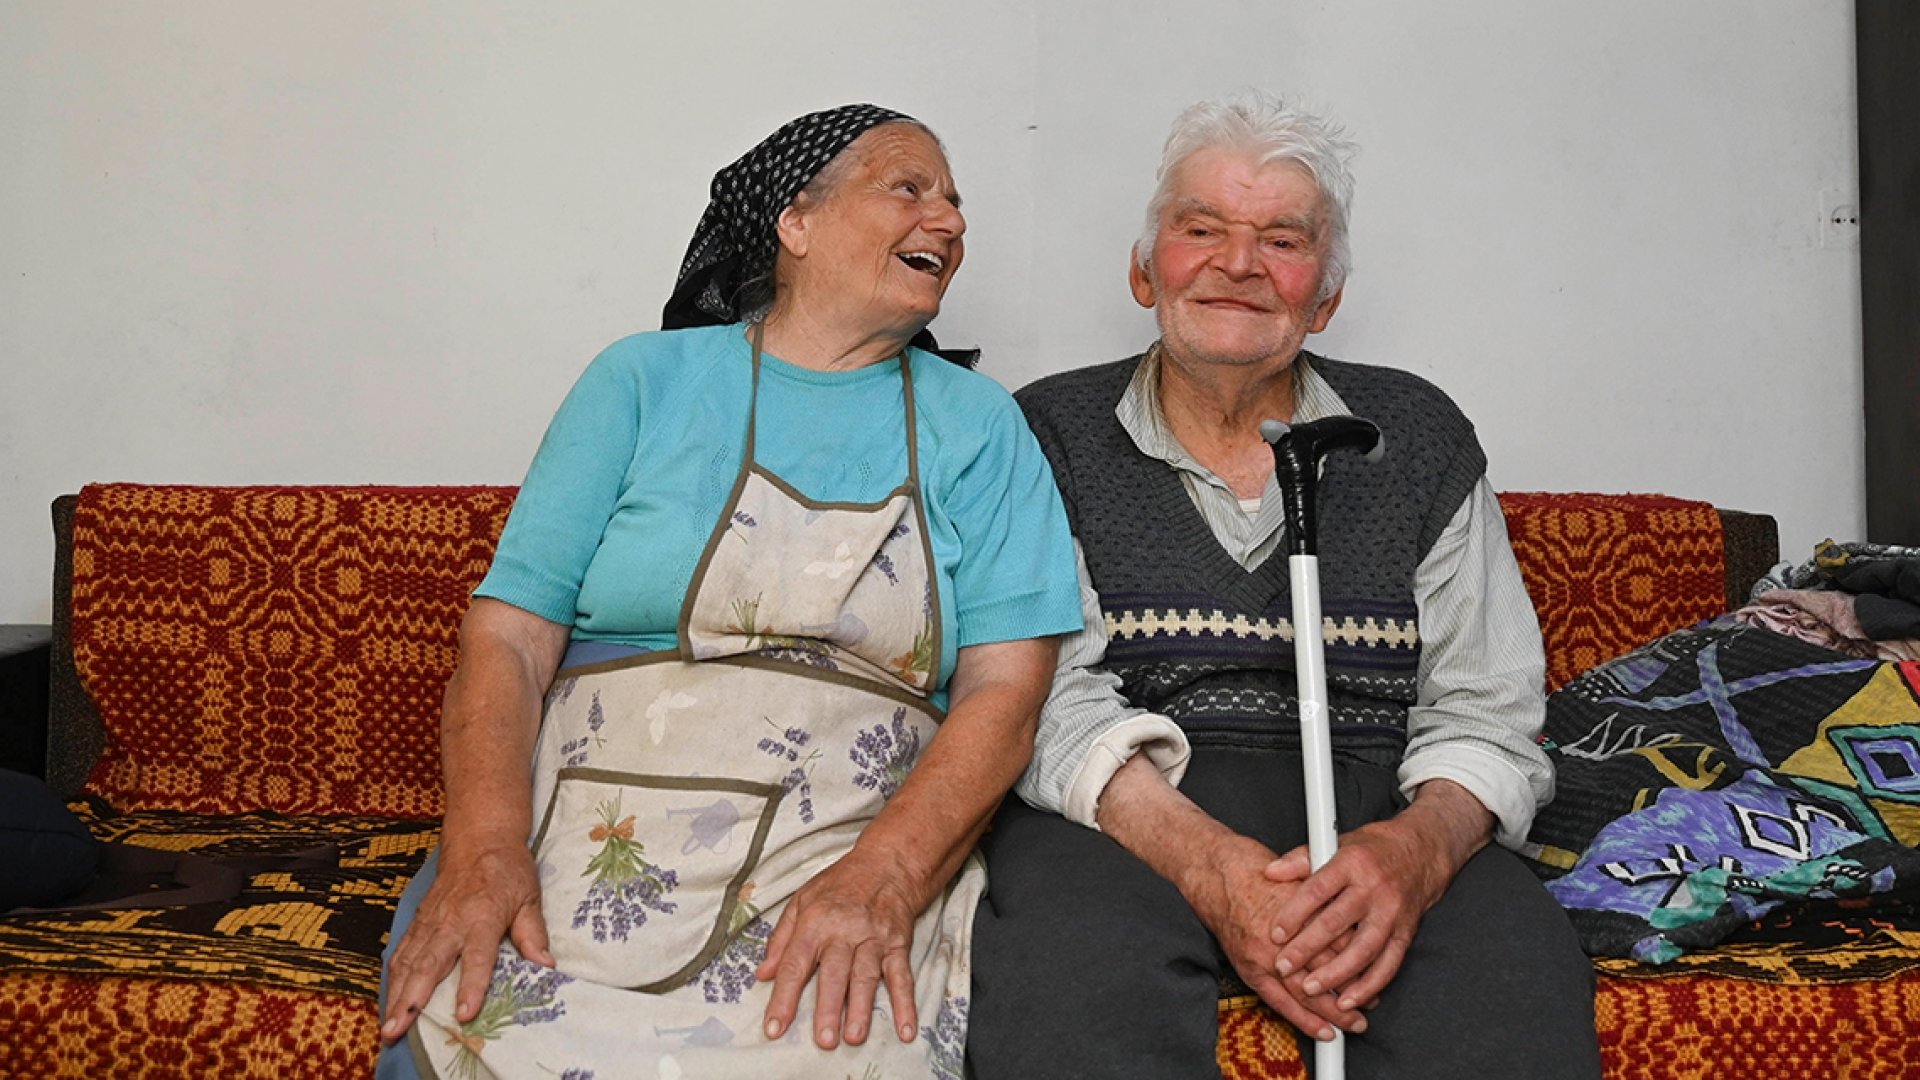 Spitexdienst für ältere Menschen in Rumänien - mit der Unterstützung von HEKS